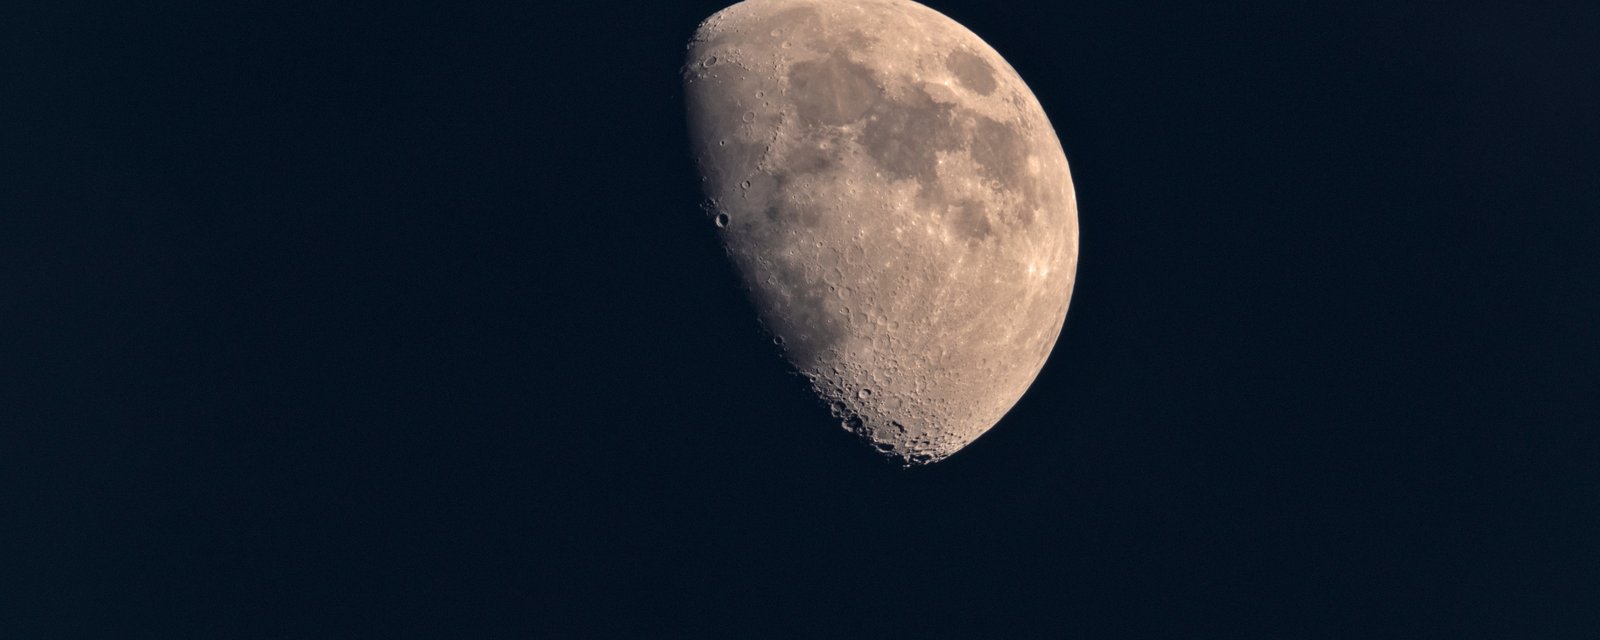 La lune va nous offrir un spectacle incroyable cette nuit qu'on ne reverra pas avant 2025